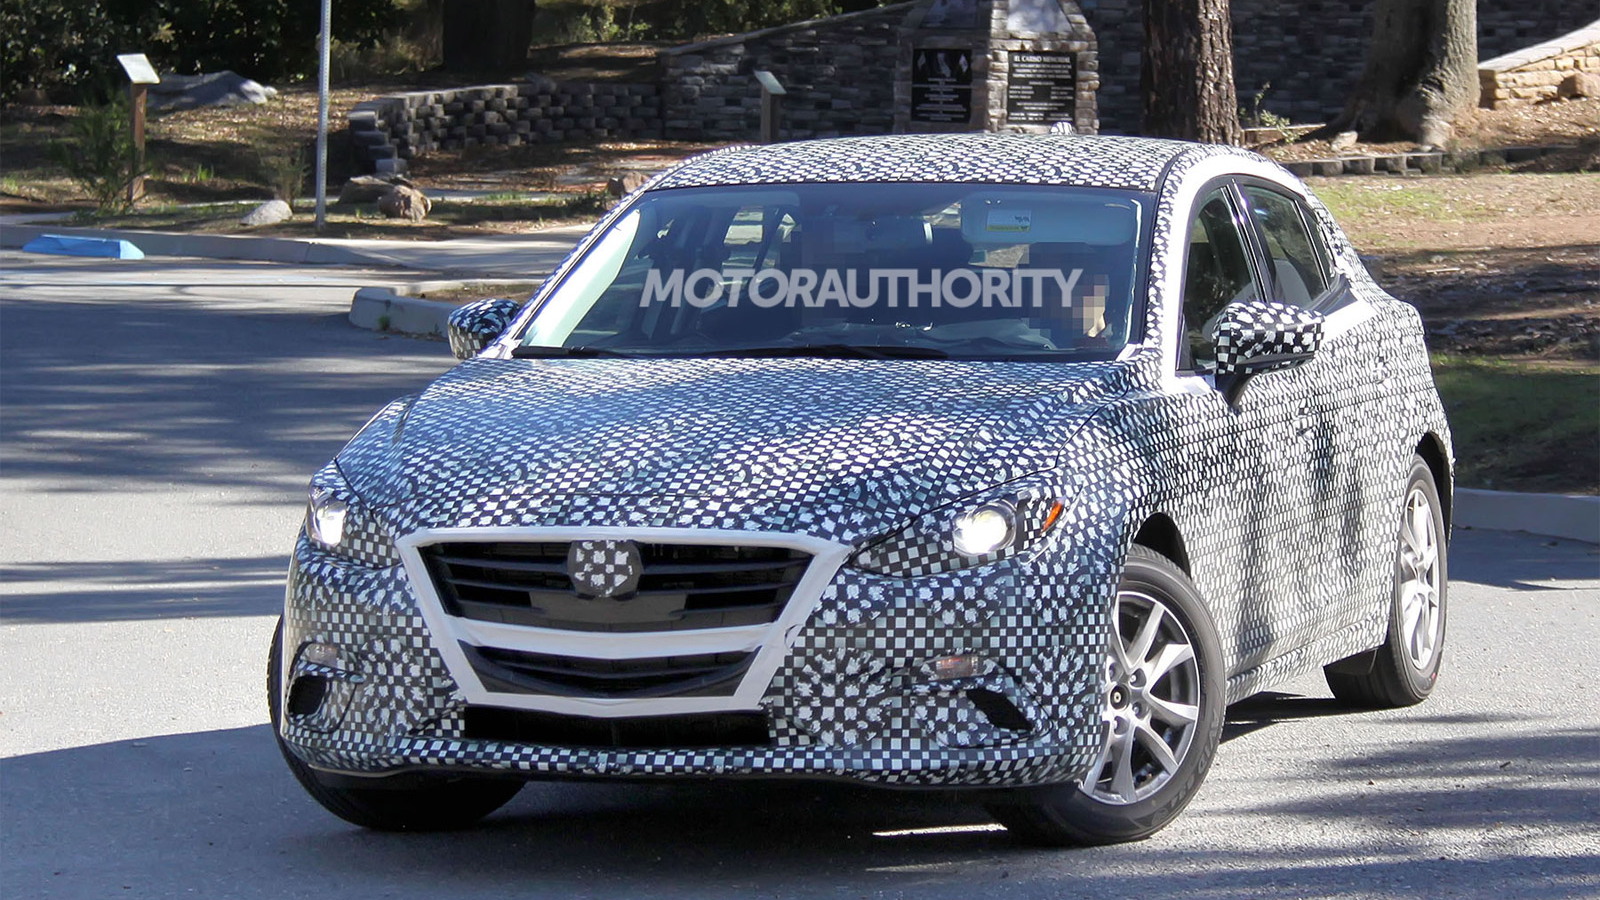 2014 Mazda Mazda3 Hatchback spy shots